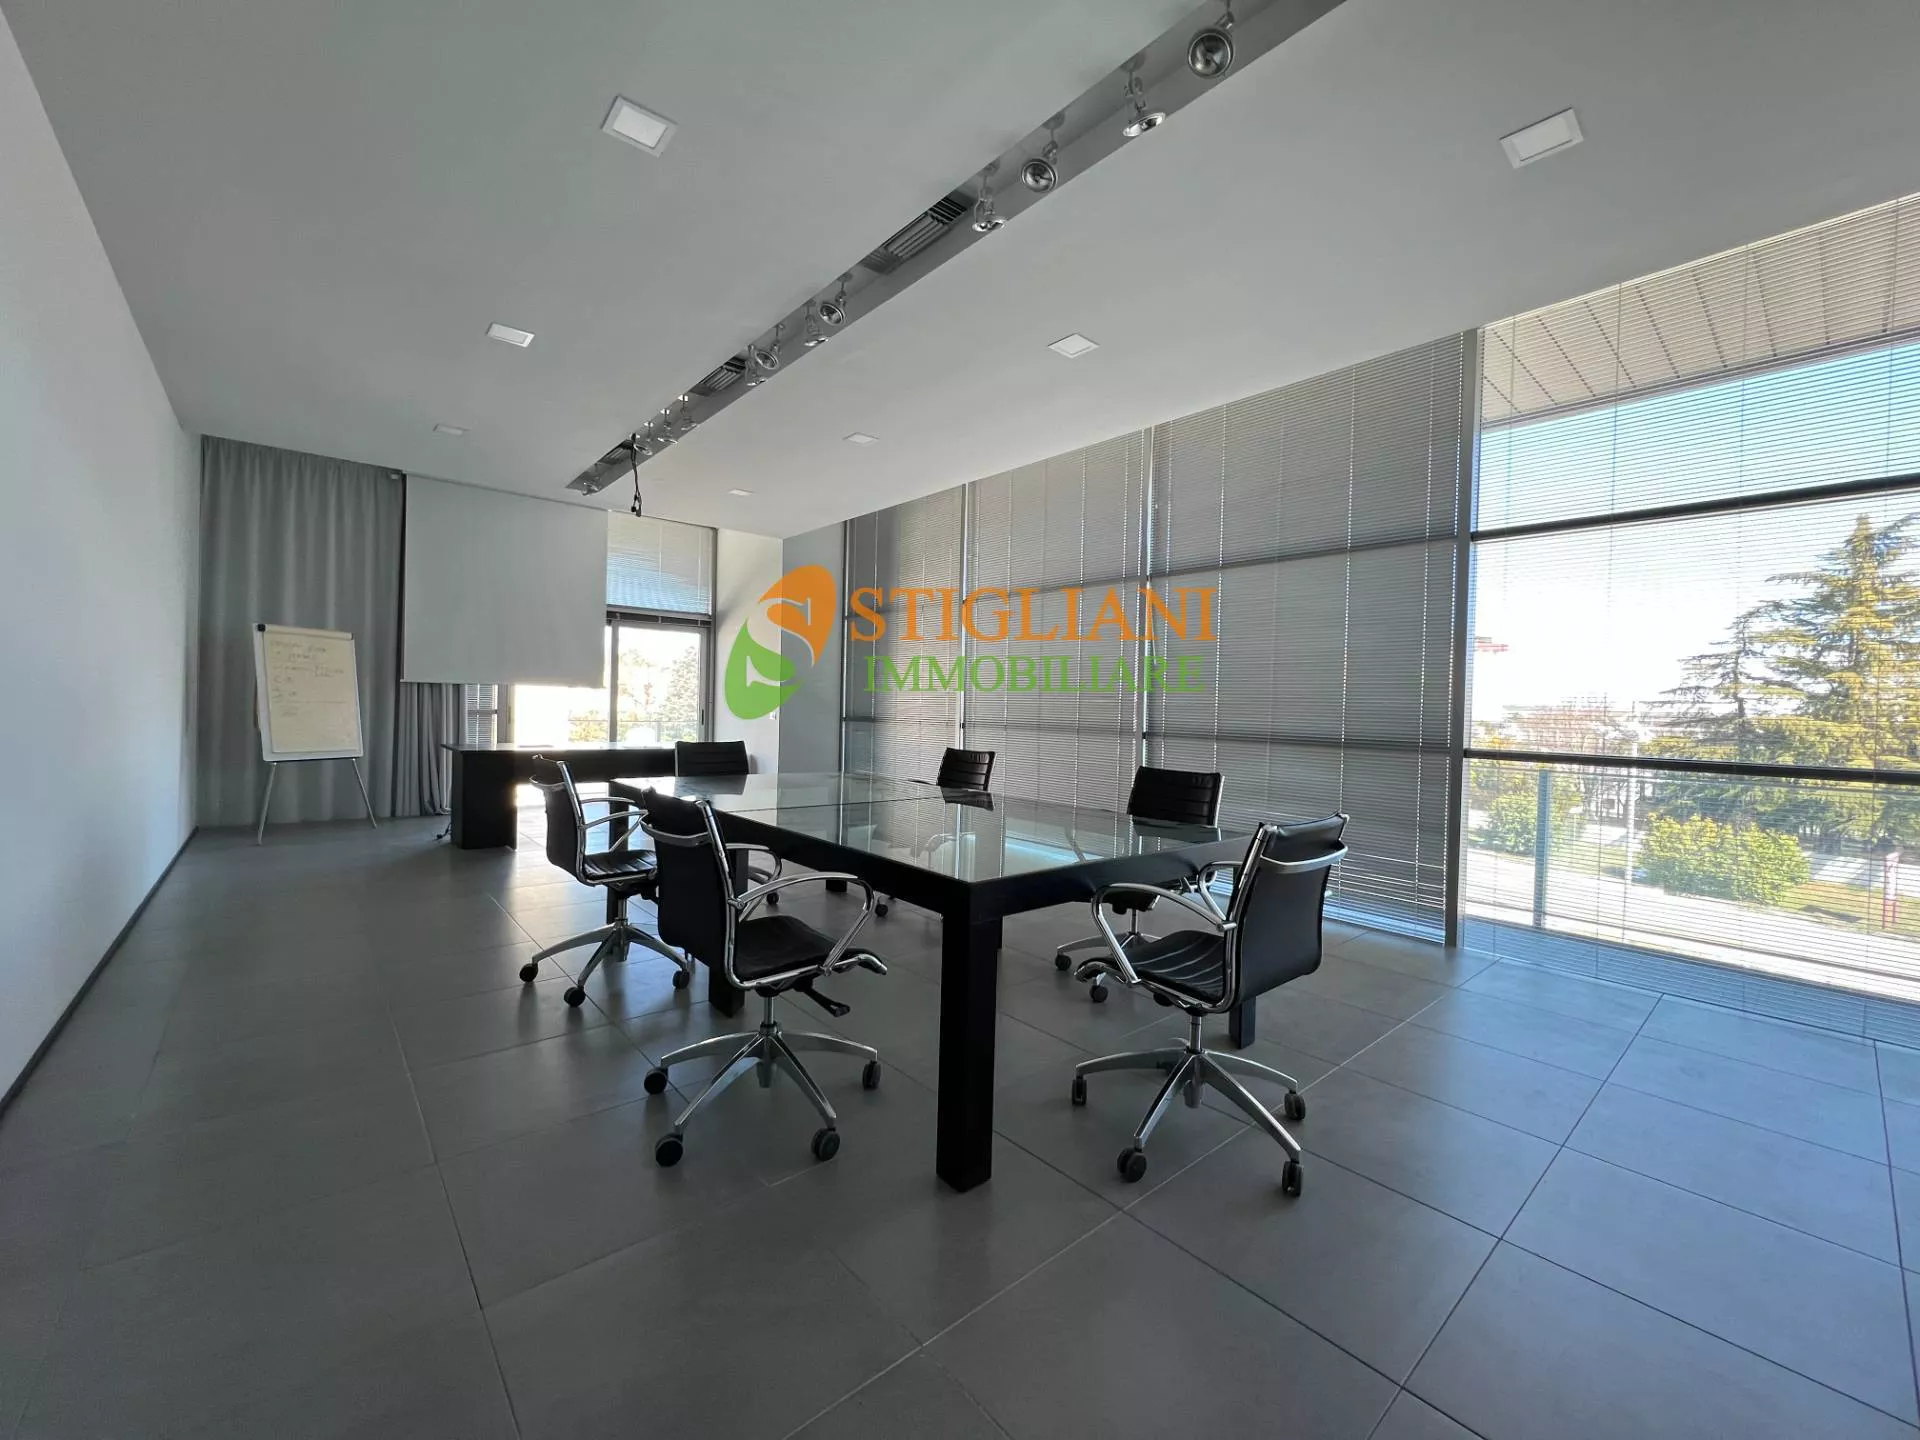 Immagine per Ufficio in affitto a Campobasso Zona industriale